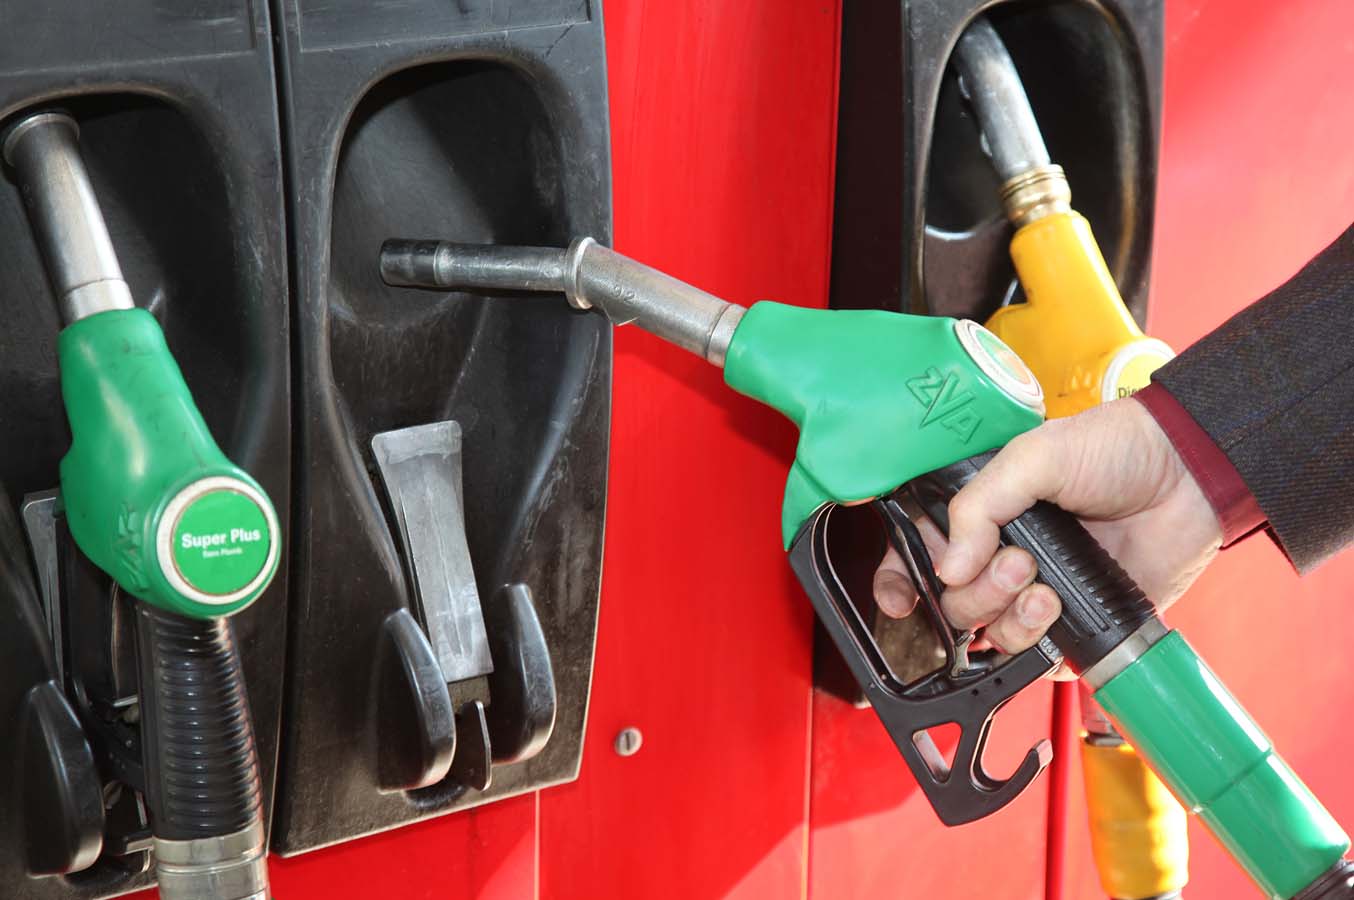     Prix des carburants stable en mai, le gaz est en baisse

